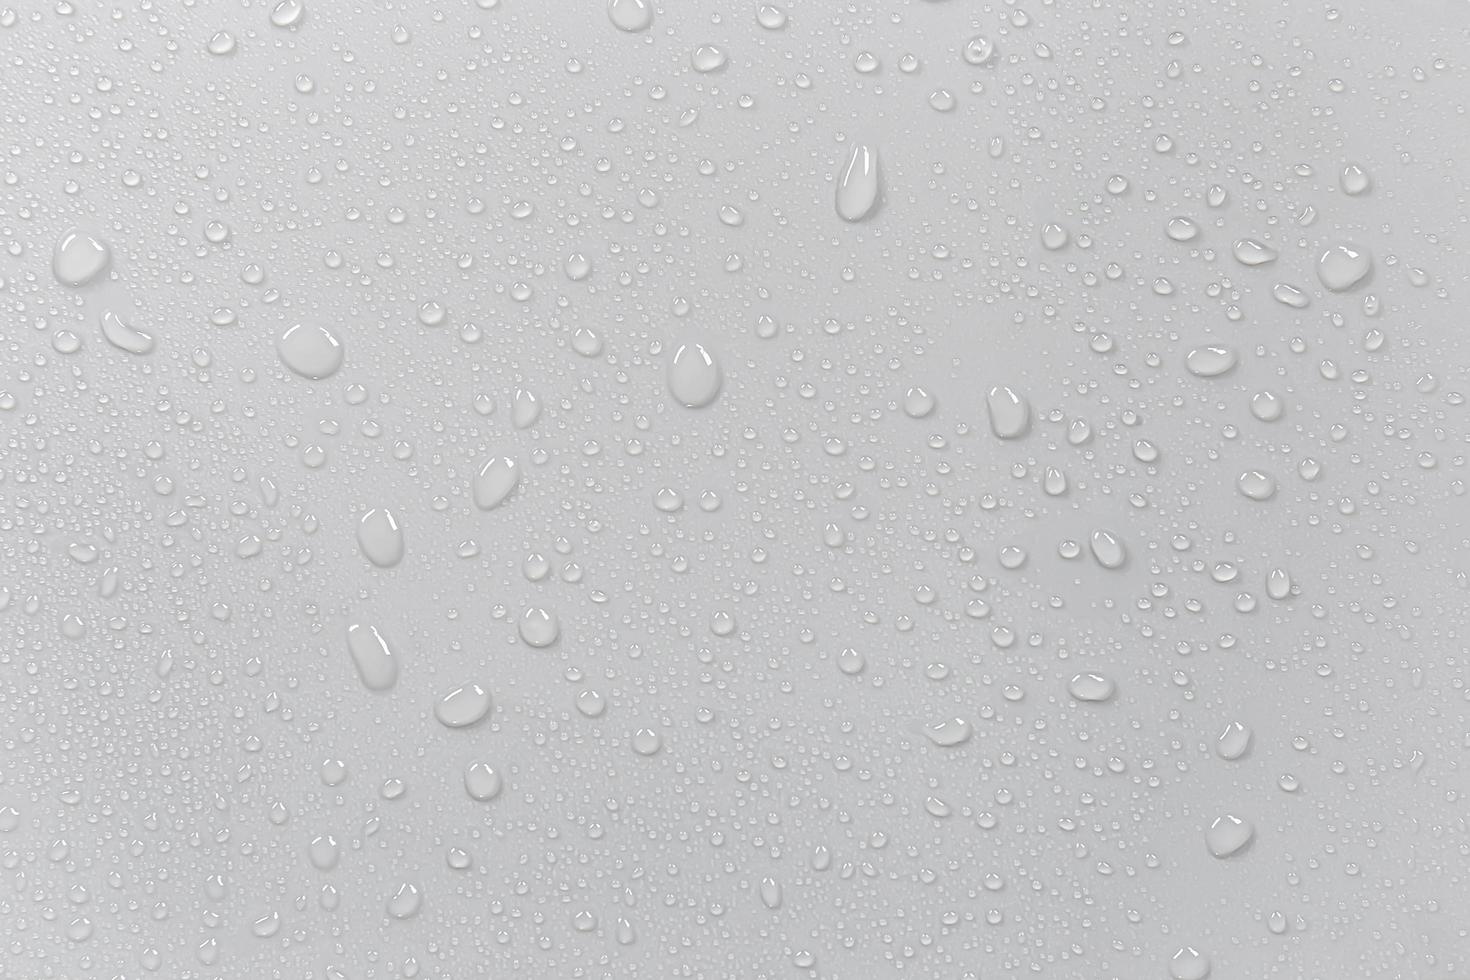 el concepto de gotas de lluvia que caen sobre un fondo gris superficie blanca húmeda abstracta con burbujas en la superficie gotas de agua de gotas de agua pura realistas para el diseño creativo de pancartas foto